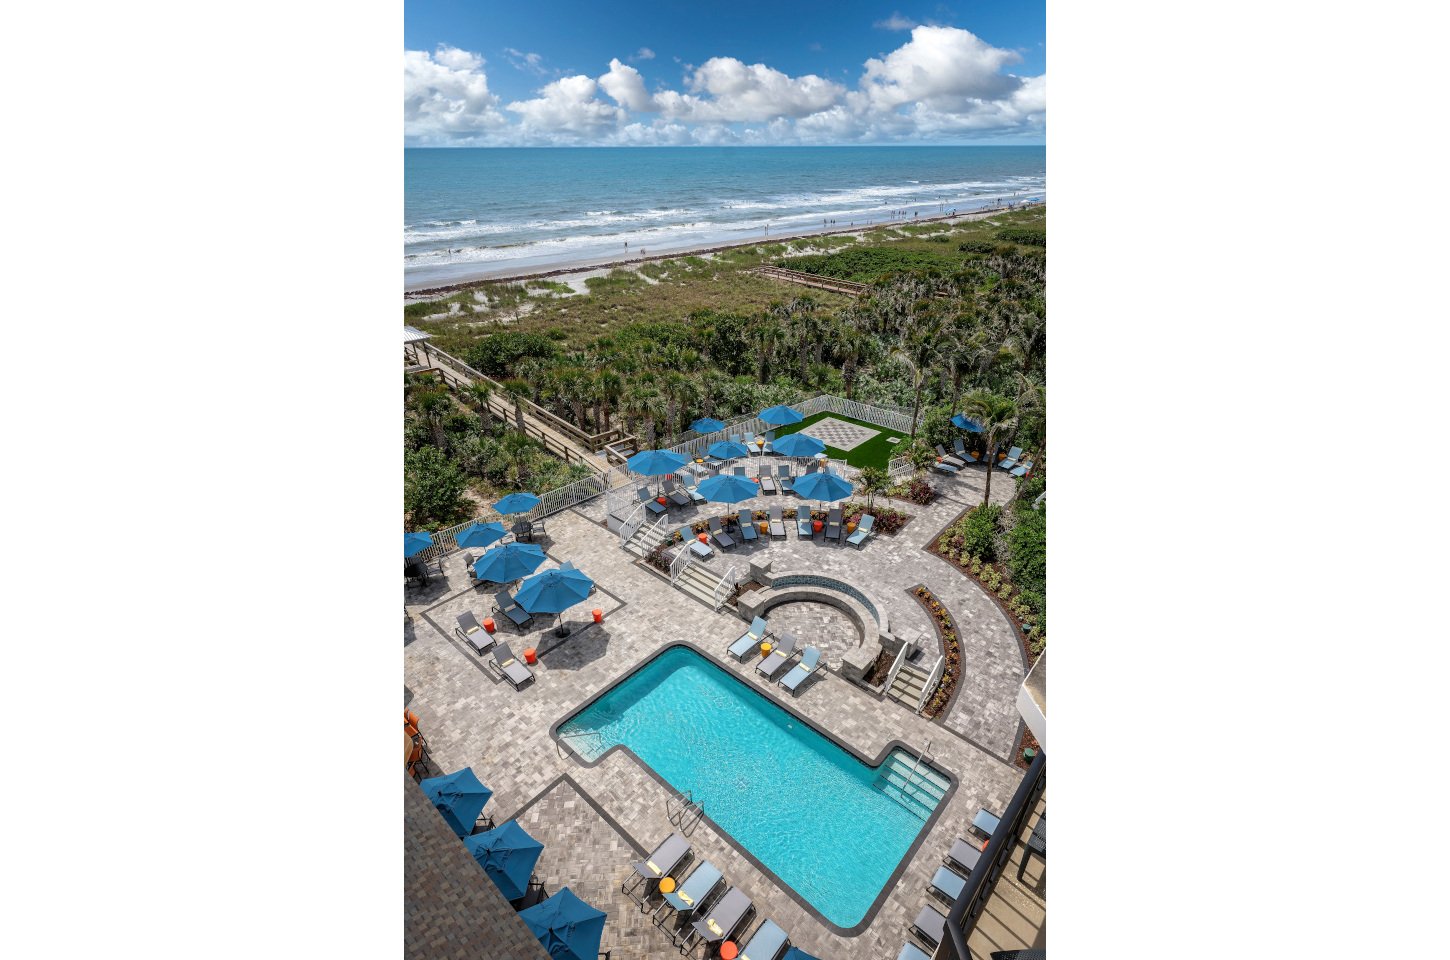 Hilton Garden Inn Cocoa Beach Aerial pool view